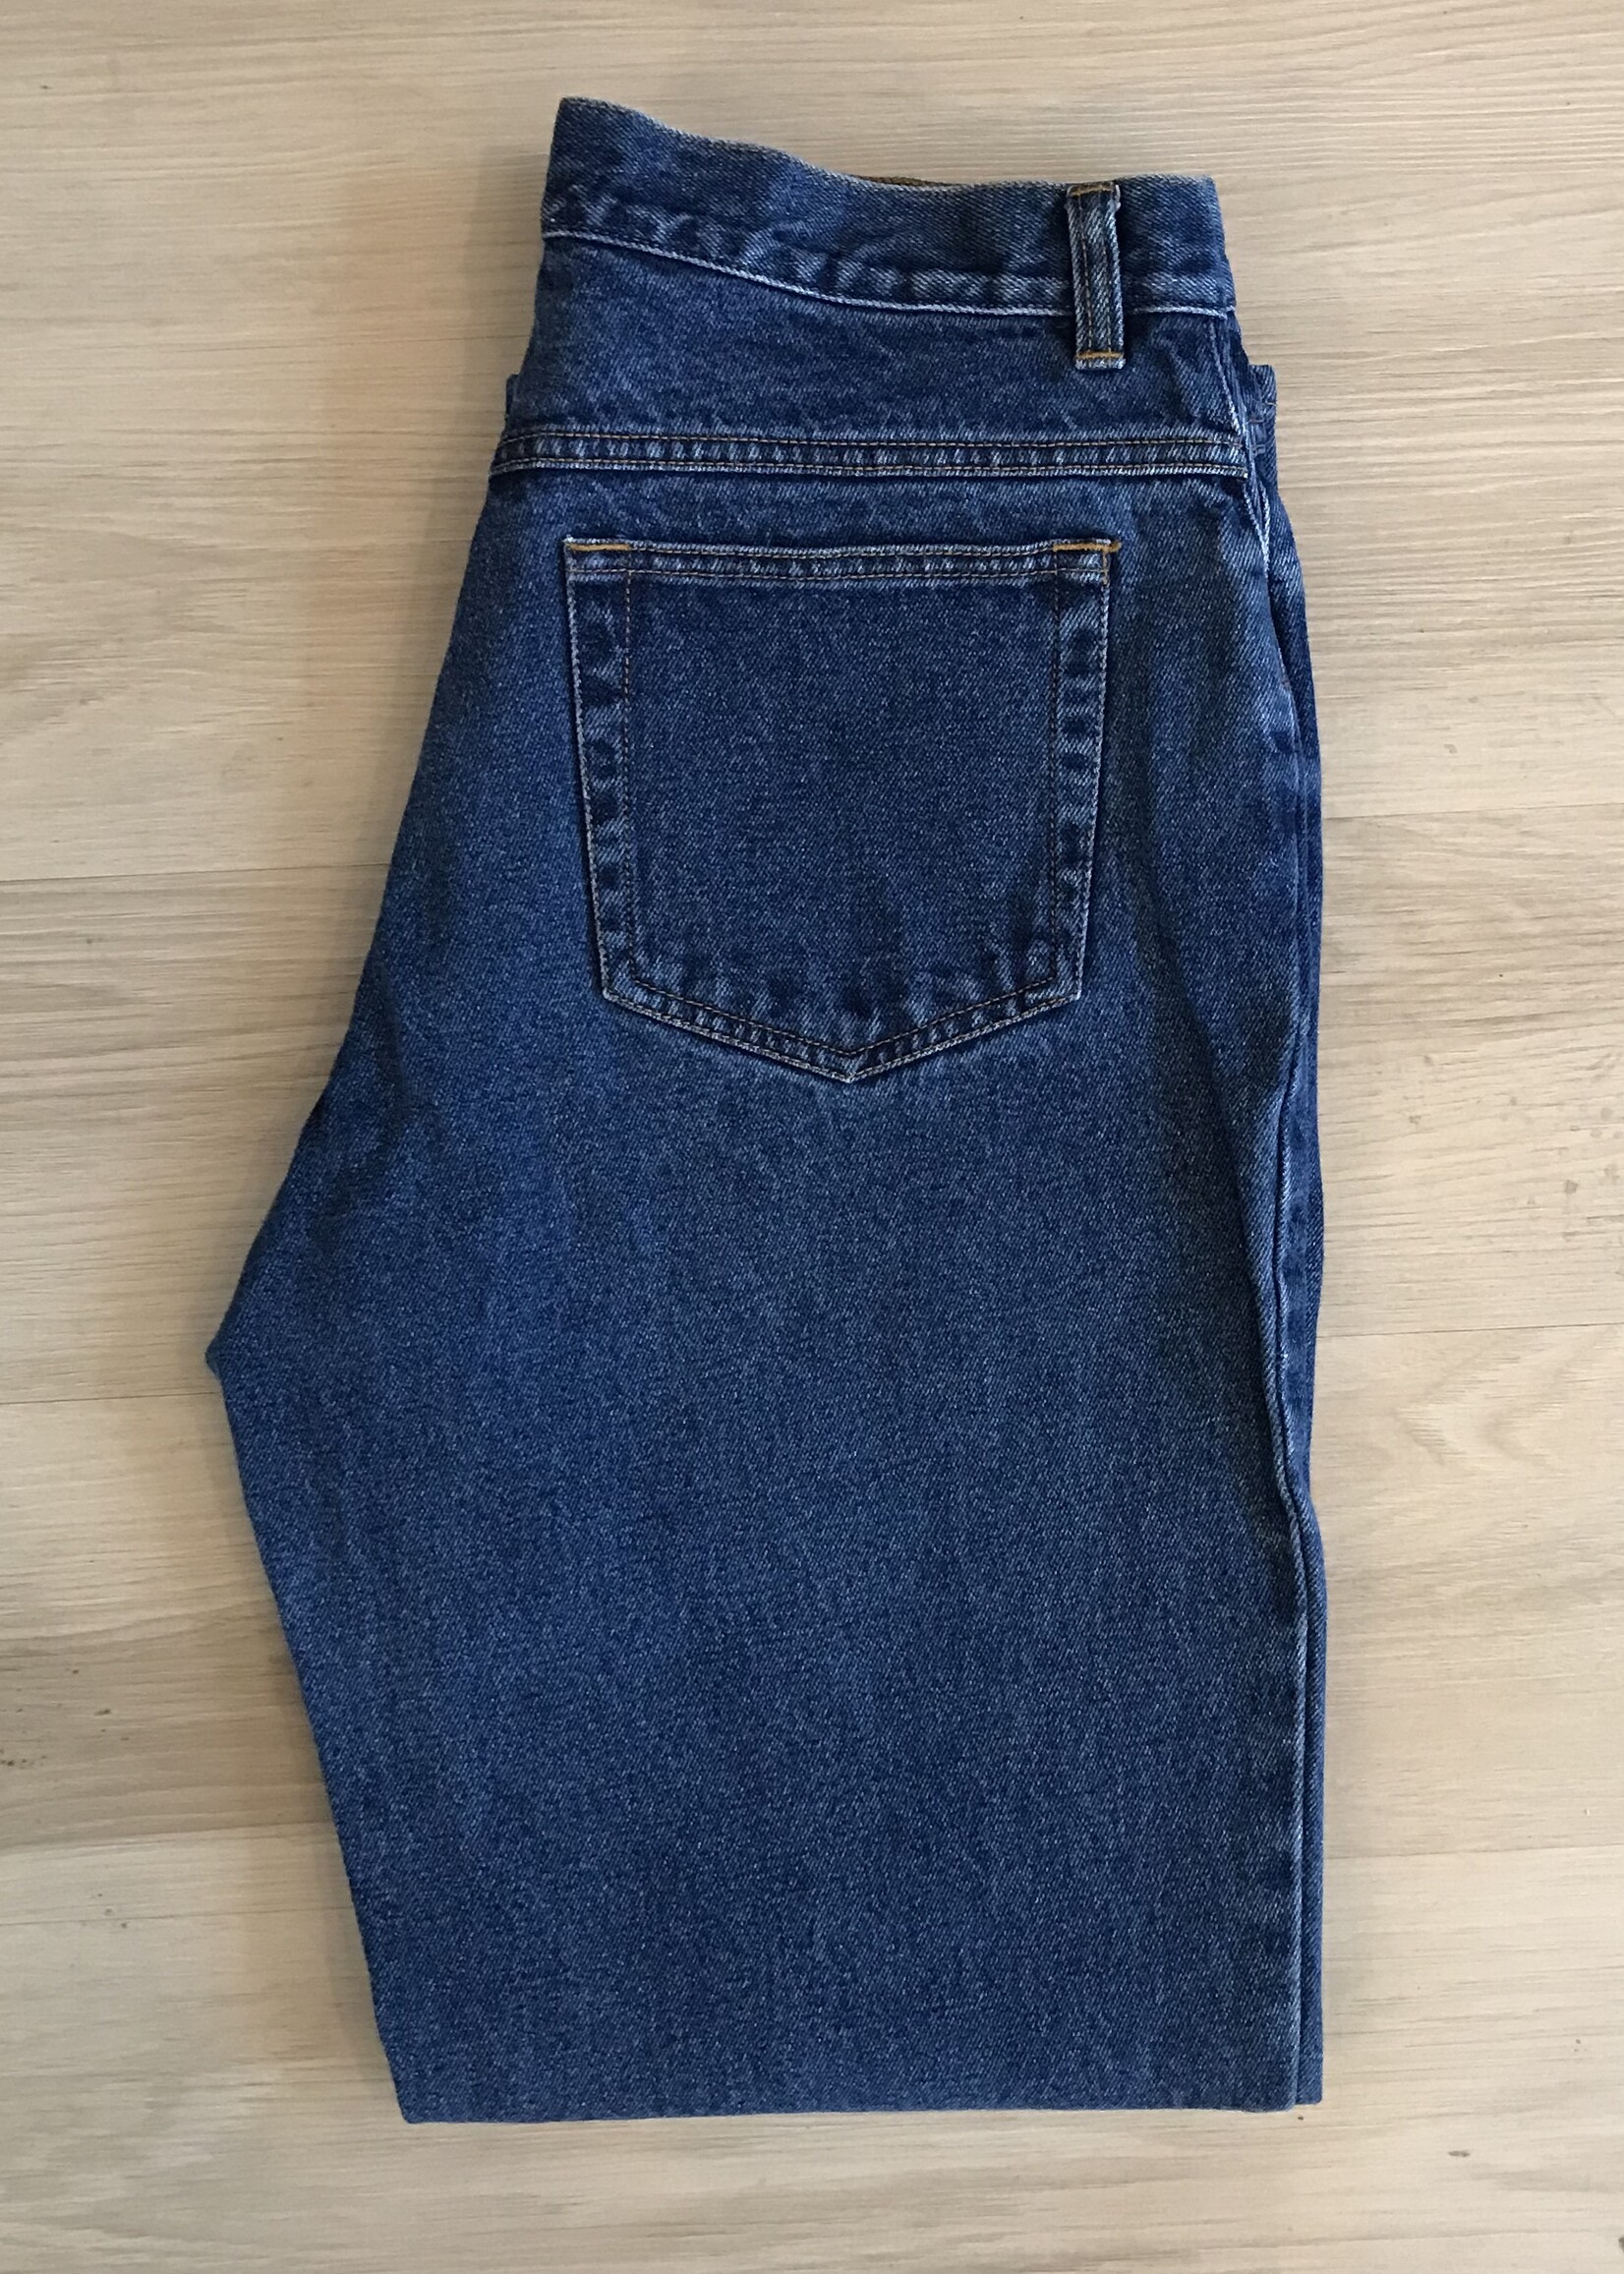 11053	ll bean jeans sz 10